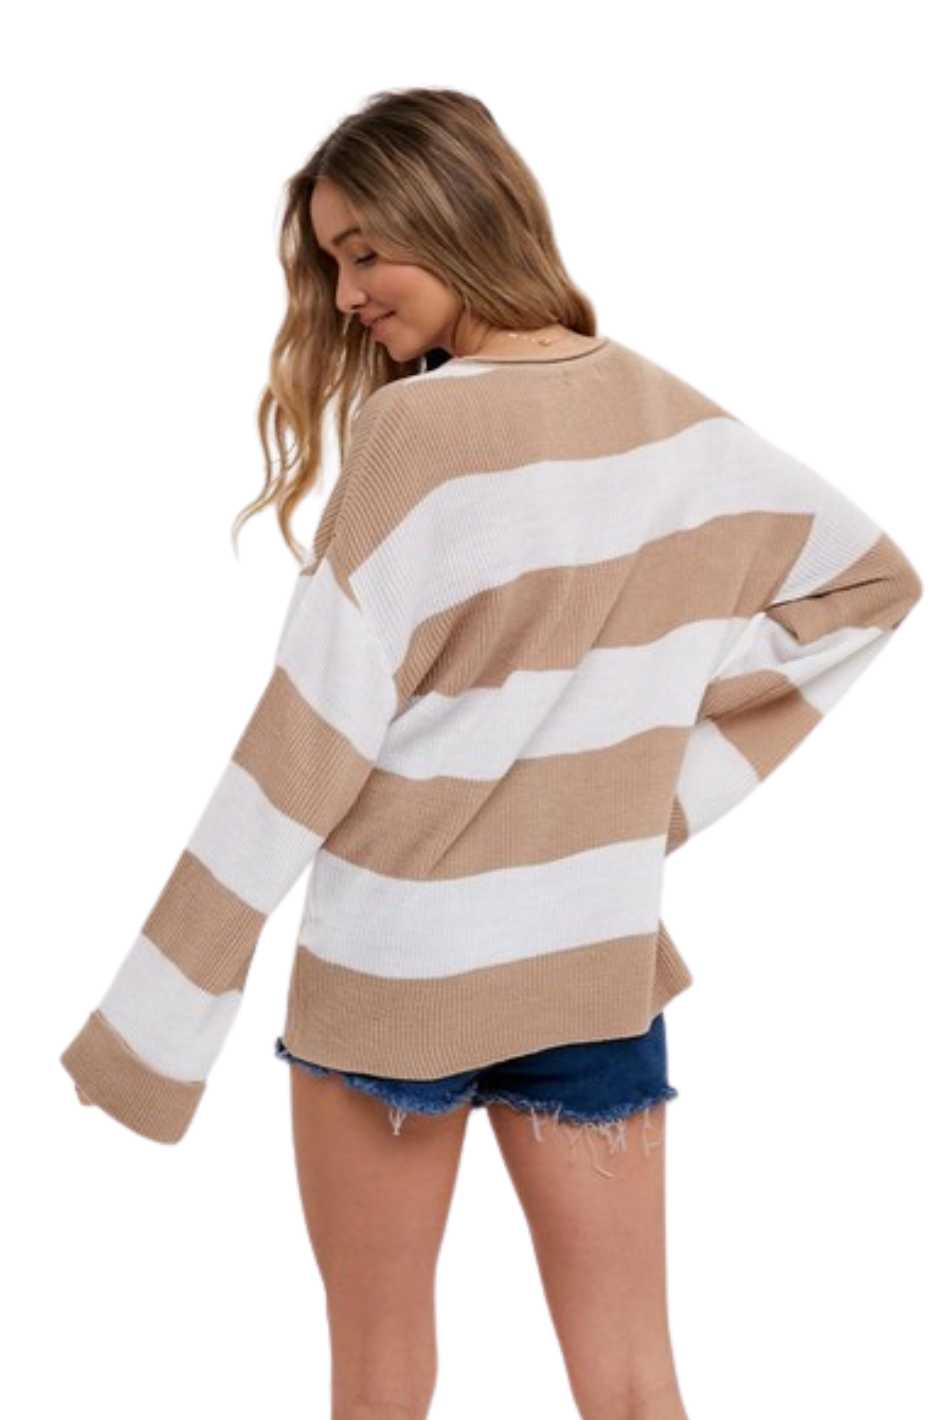 Coco Striped Sweater - Expressive Collective CO.